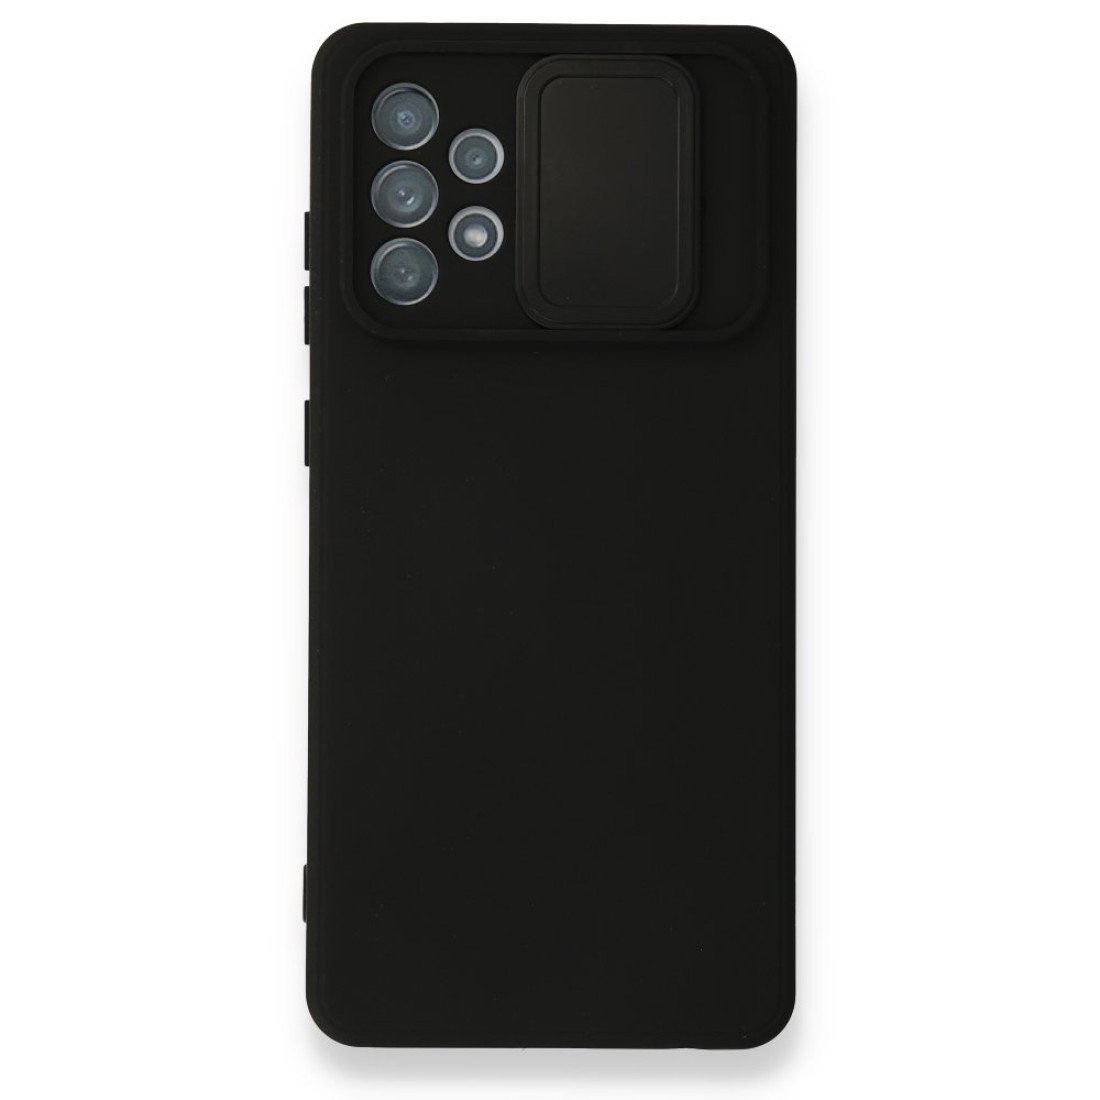 Samsung Galaxy A72 Kılıf Color Lens Silikon - Siyah